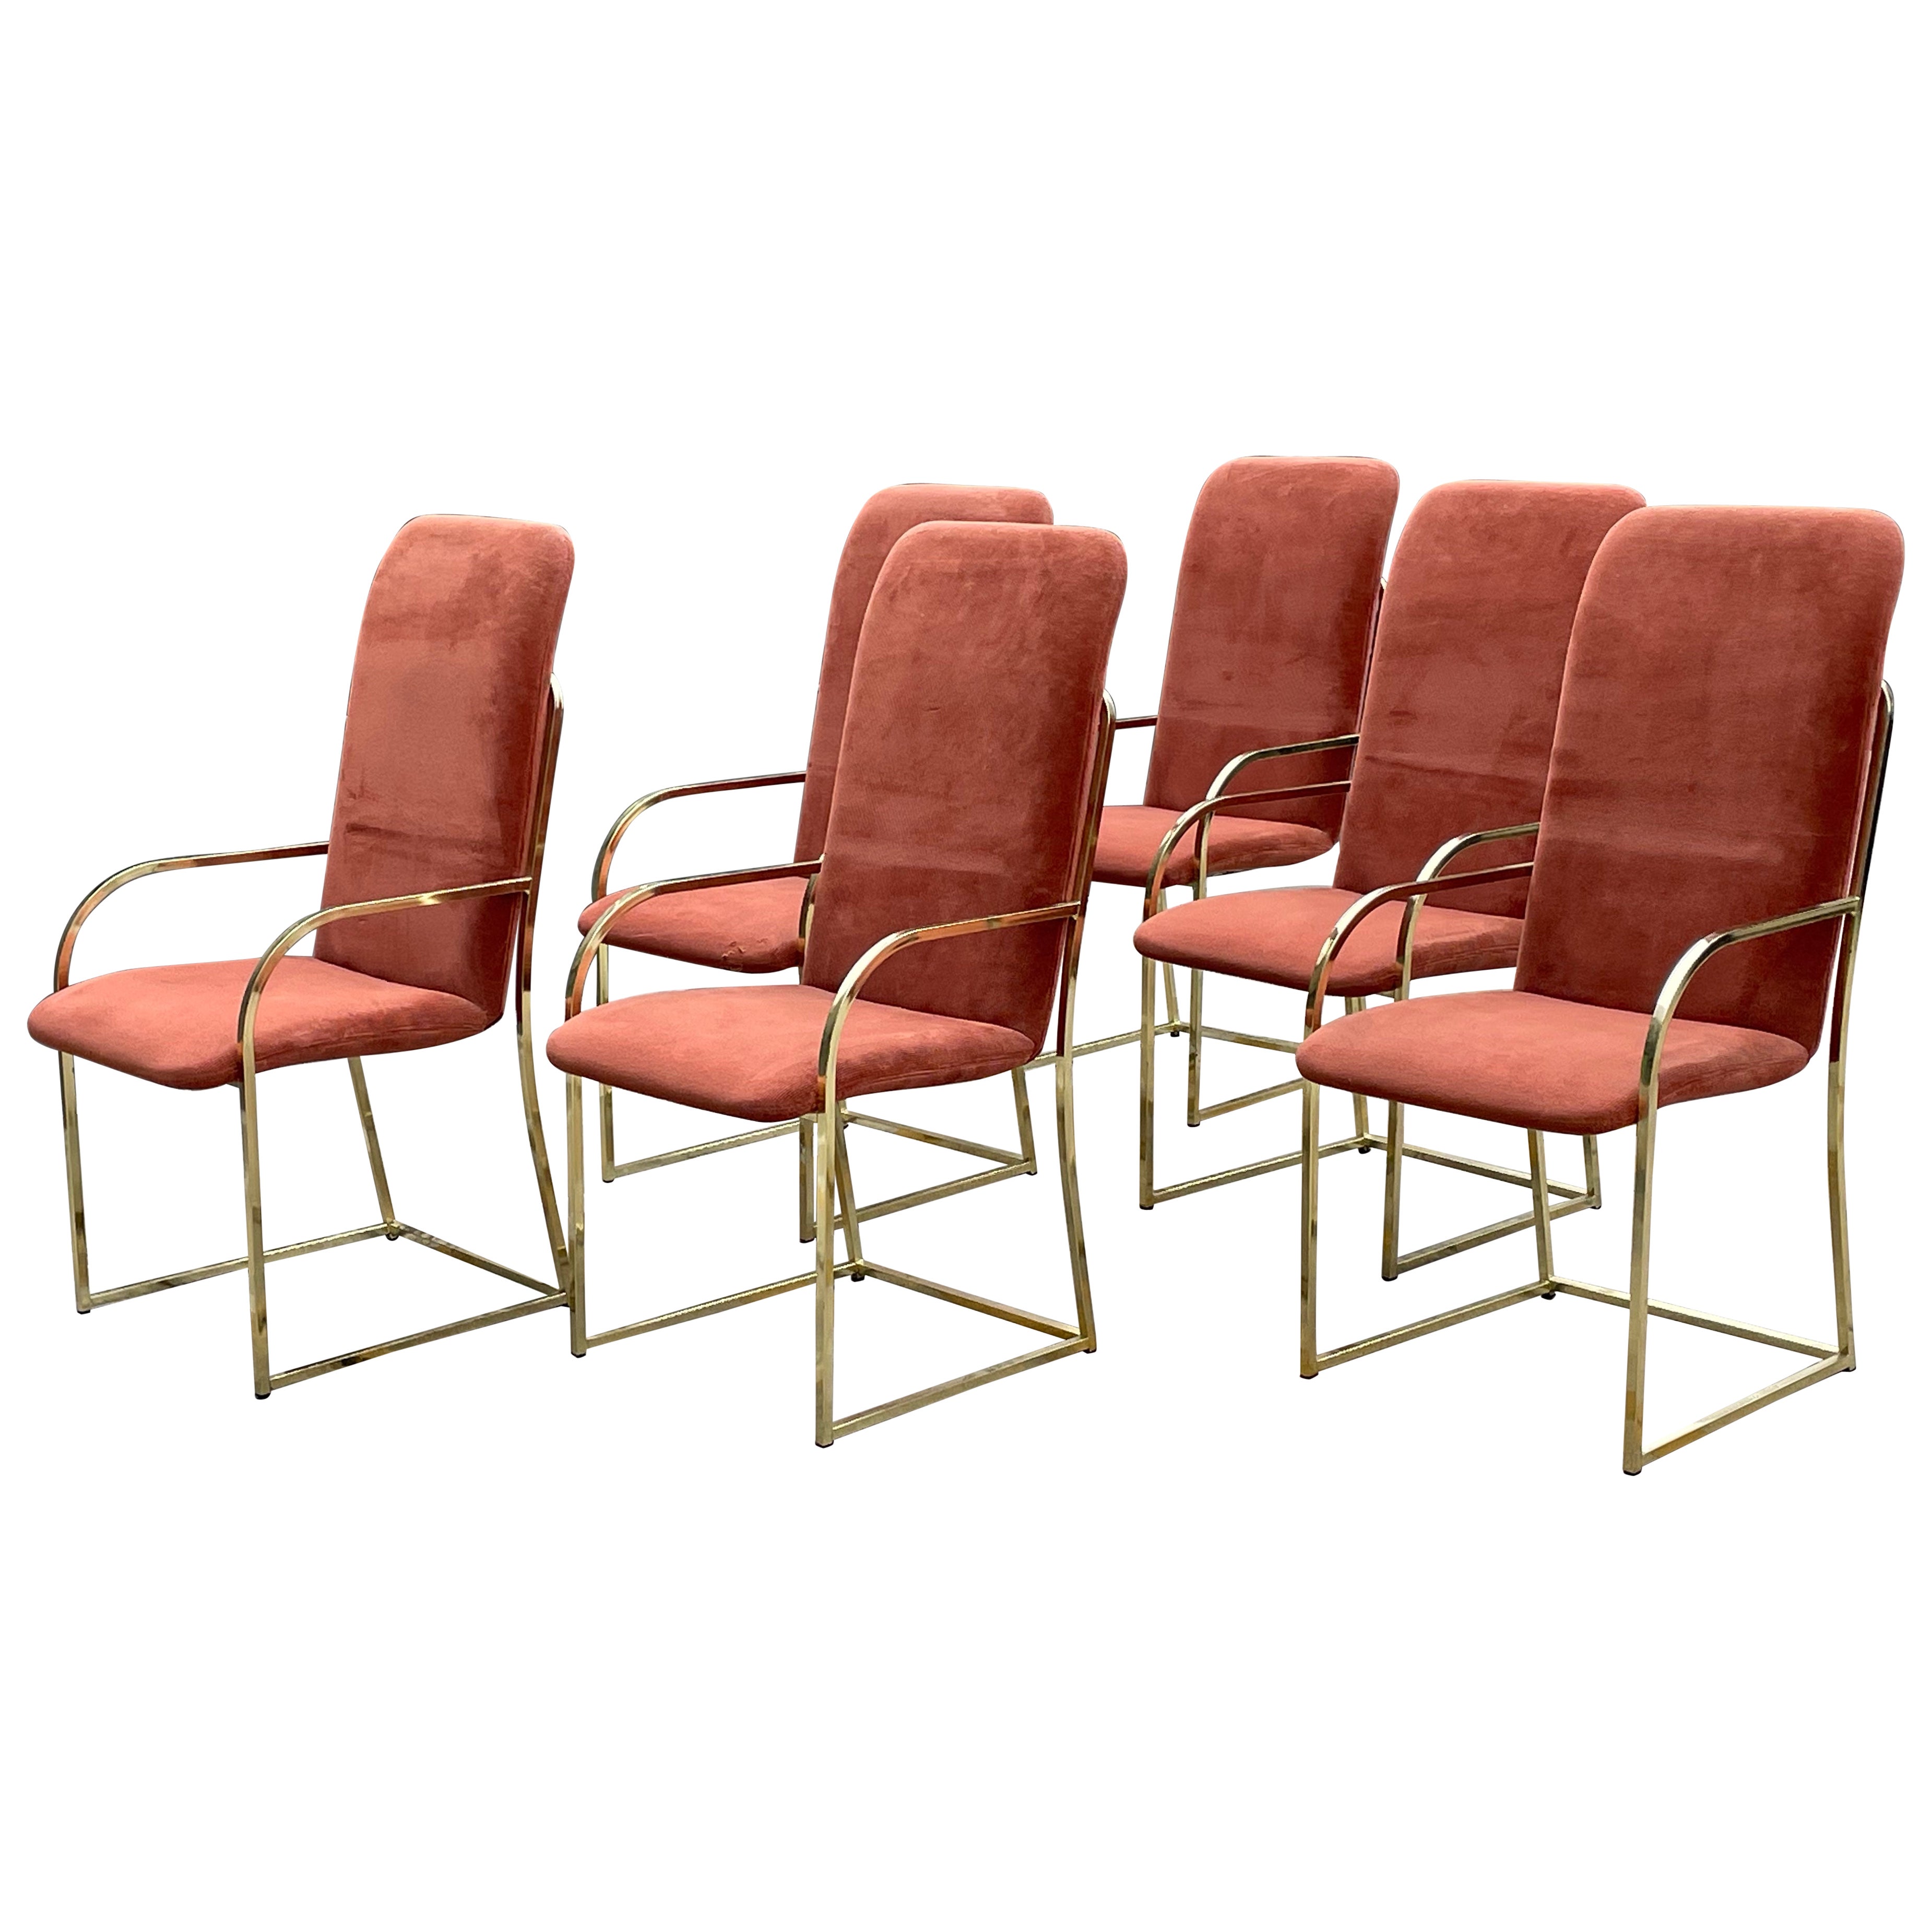 Satz von (6) Milo Baughman Messing-Esszimmerstühlen aus der Mitte der 60er Jahre für das DIA Design Institute of America.

Guter Vintage-Zustand. Die meisten Stühle sind mit einem DIA Label SIGNIERT. Einer ist mit einem Metallschild versehen, drei